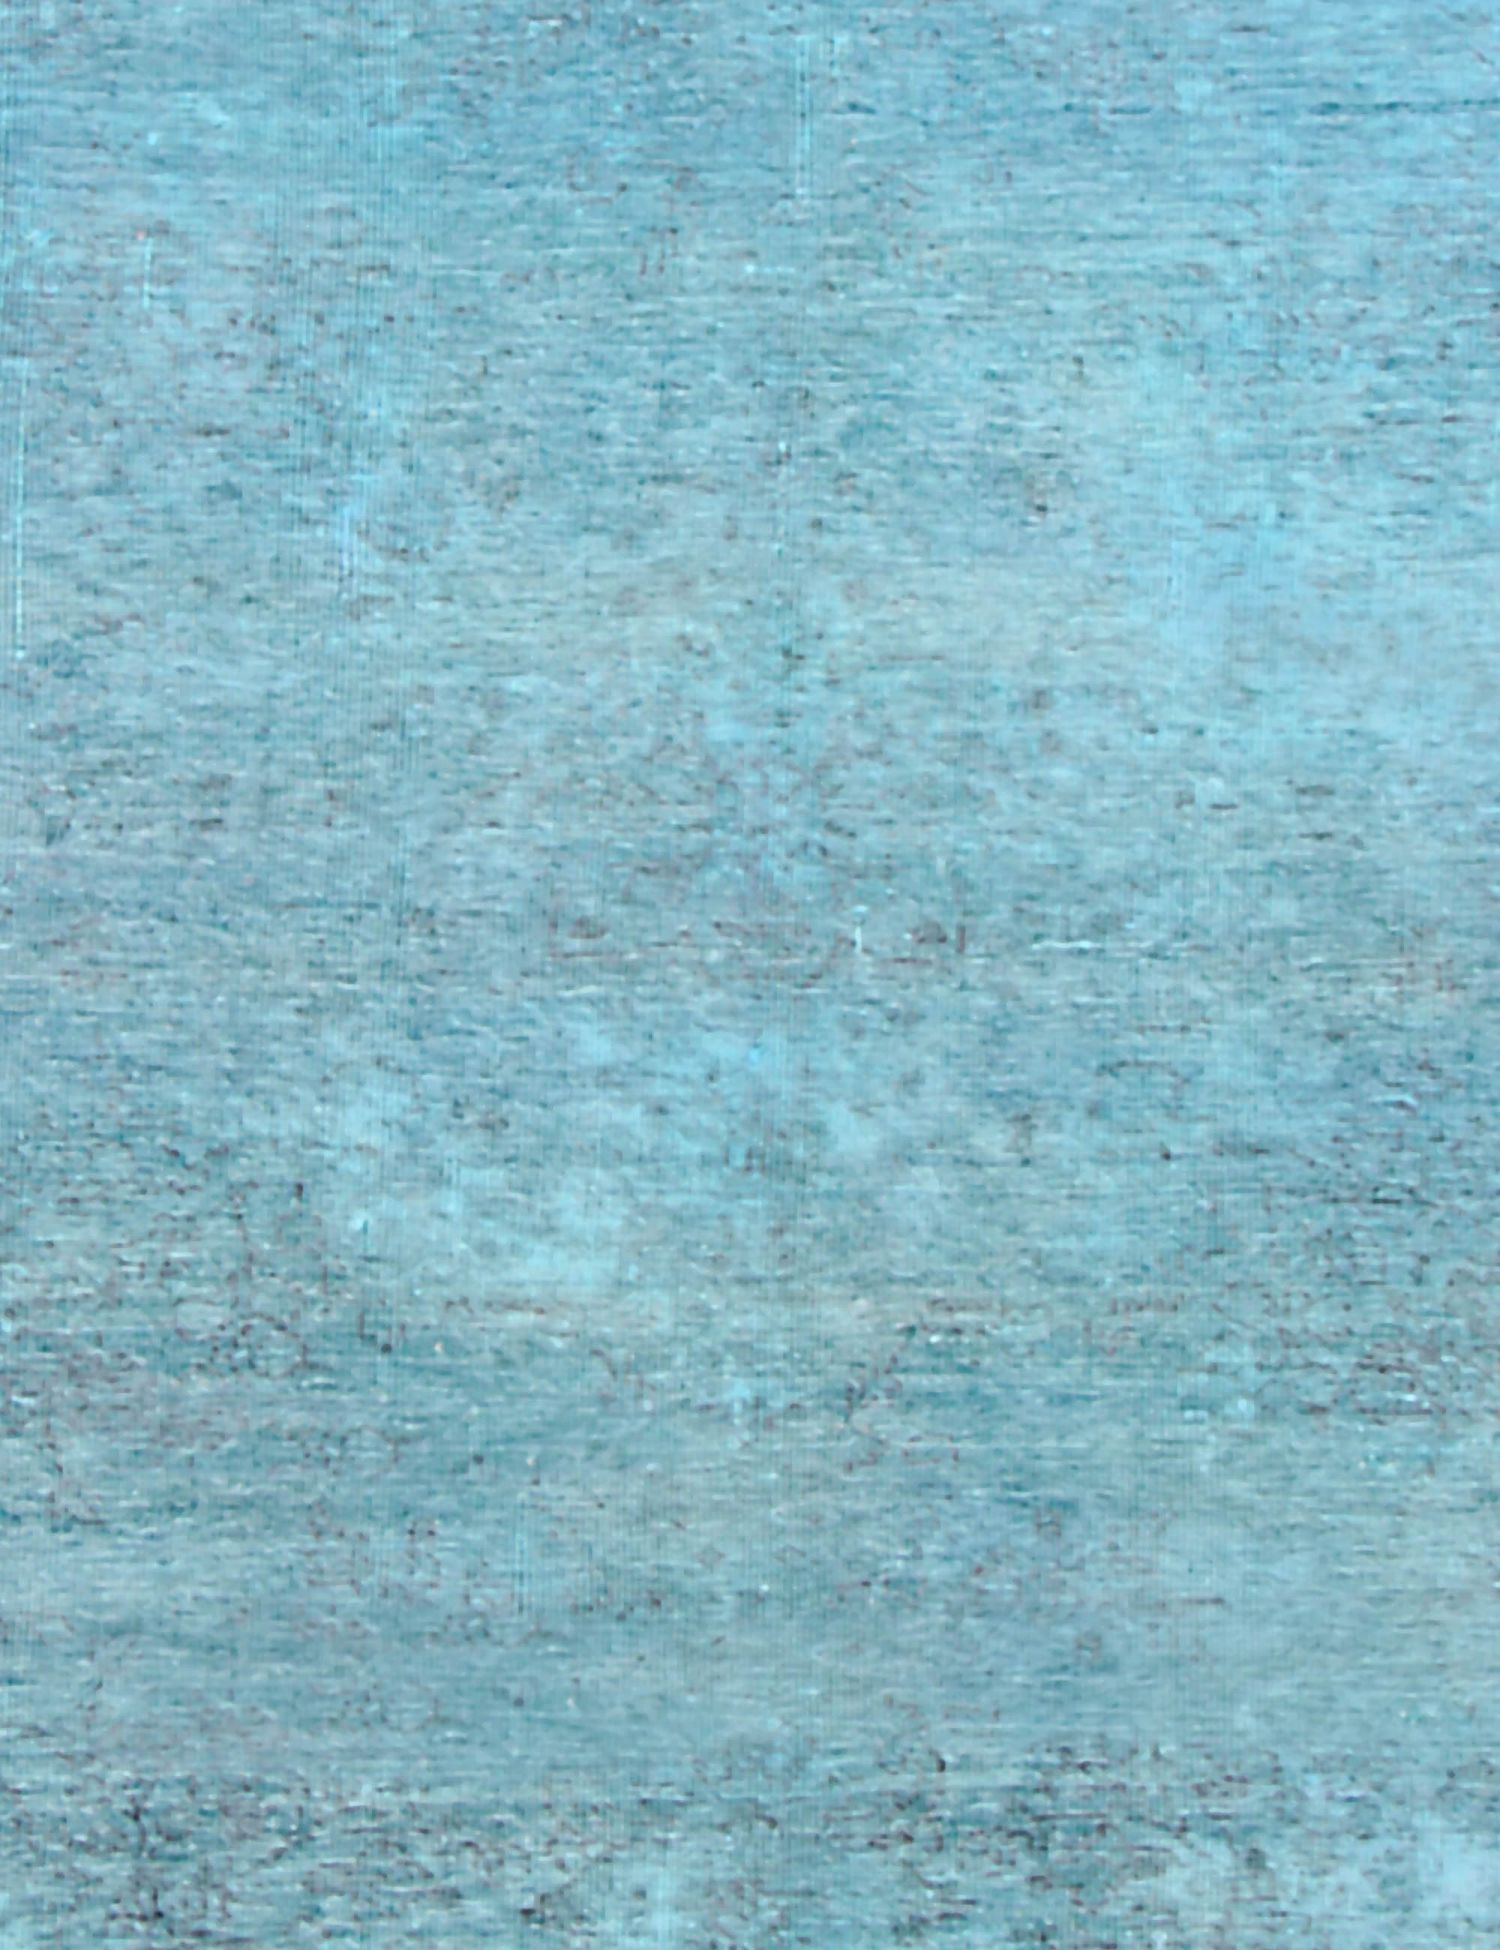 Persischer vintage teppich  blau <br/>201 x 117 cm